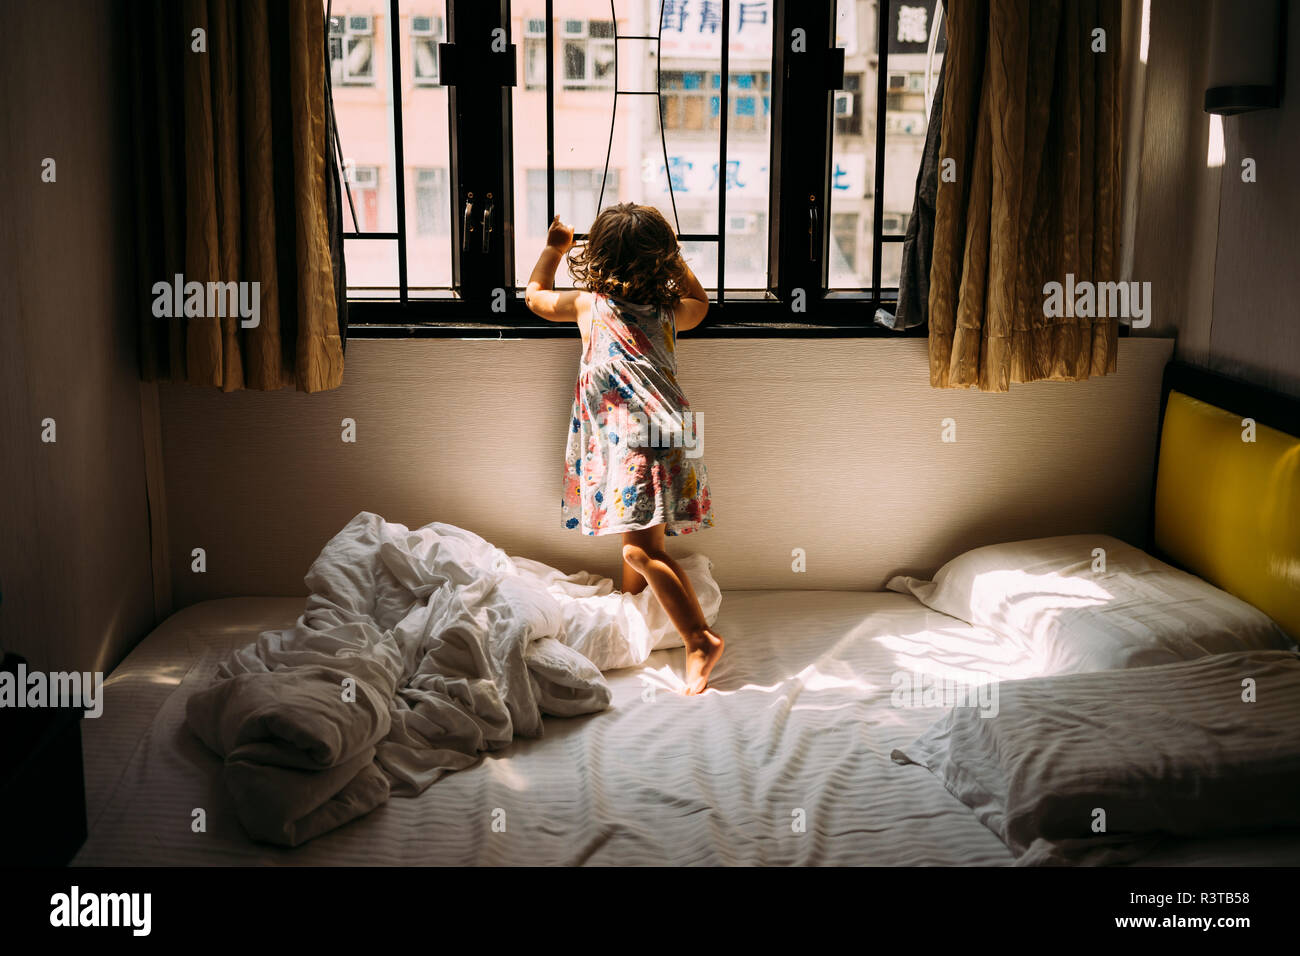 La Chine, Hong Kong, Mong Kok, vue de l'arrière petite fille debout pieds nus sur le lit à la fenêtre de Banque D'Images